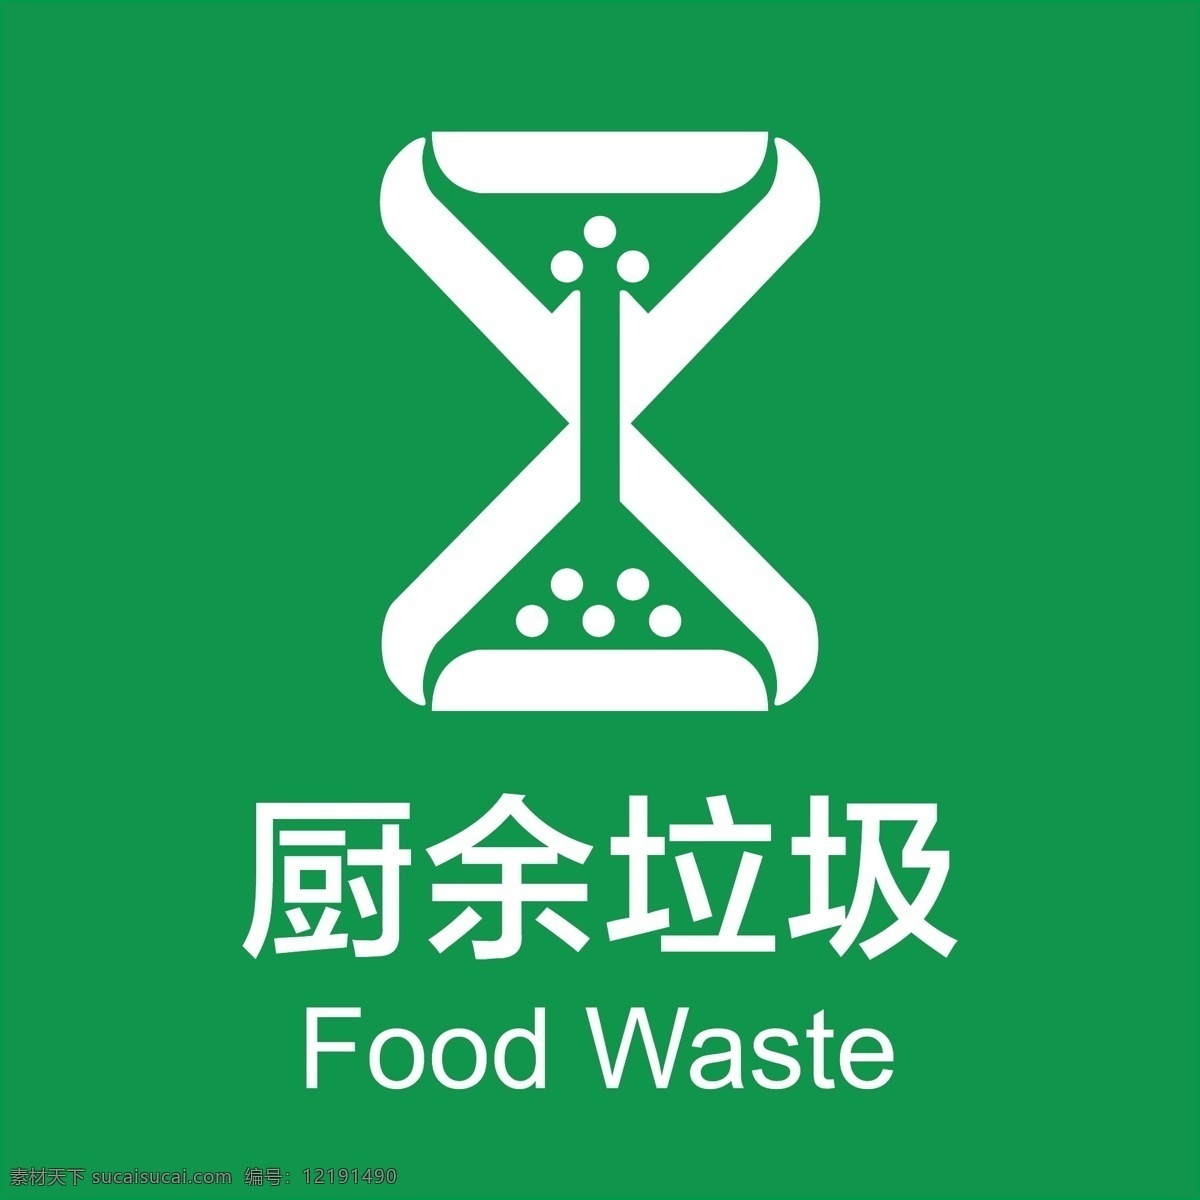 垃圾分类图片 垃圾分类 厨余垃圾 有害垃圾 其他垃圾 可回收物 生活百科 生活用品